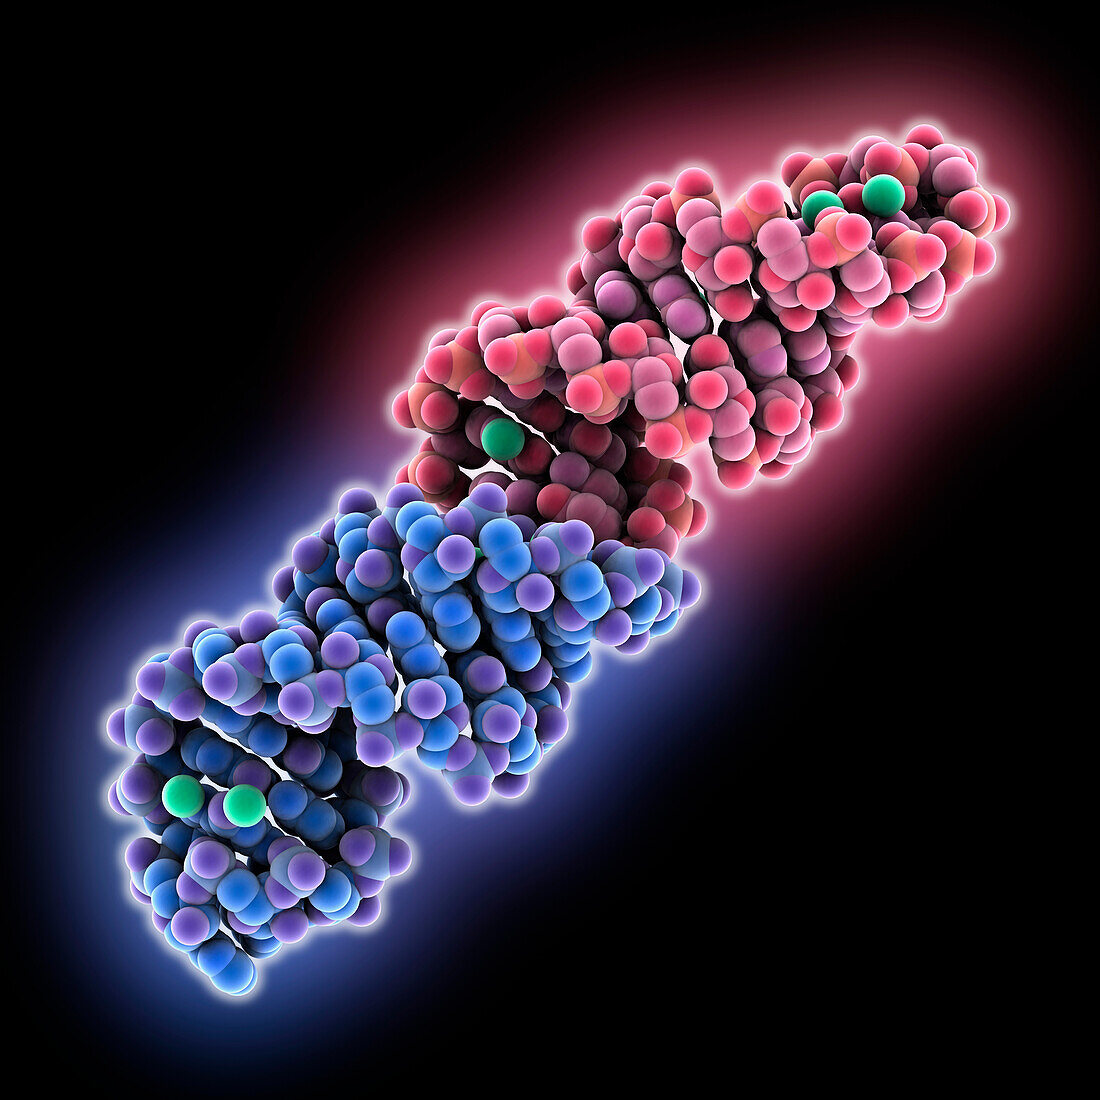 26-mer stem-loop RNA, molecular model